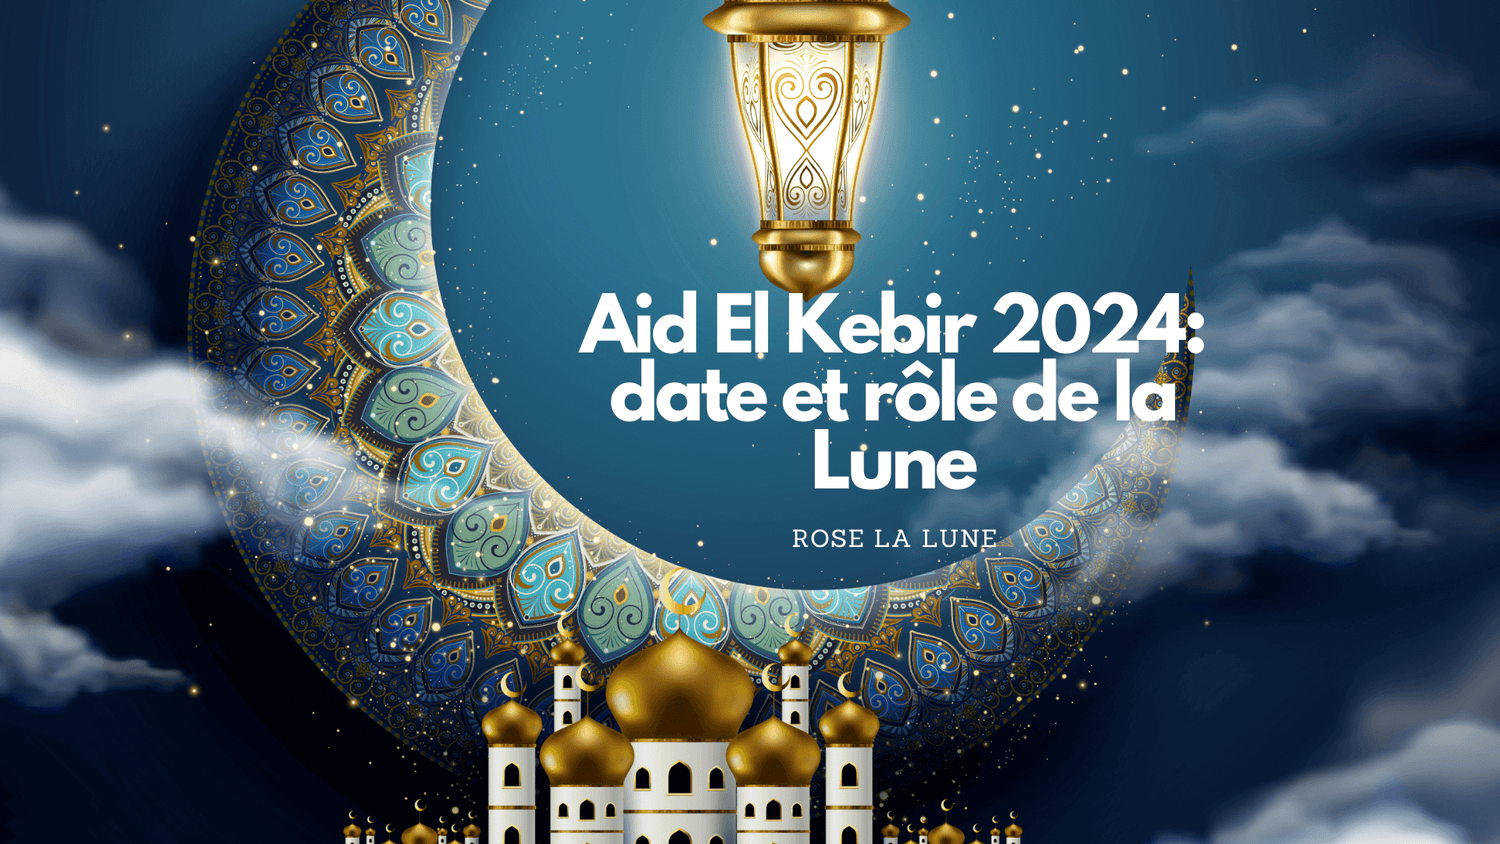 Aid El Kebir 2024 date et rôle de la Lune Rose La Lune